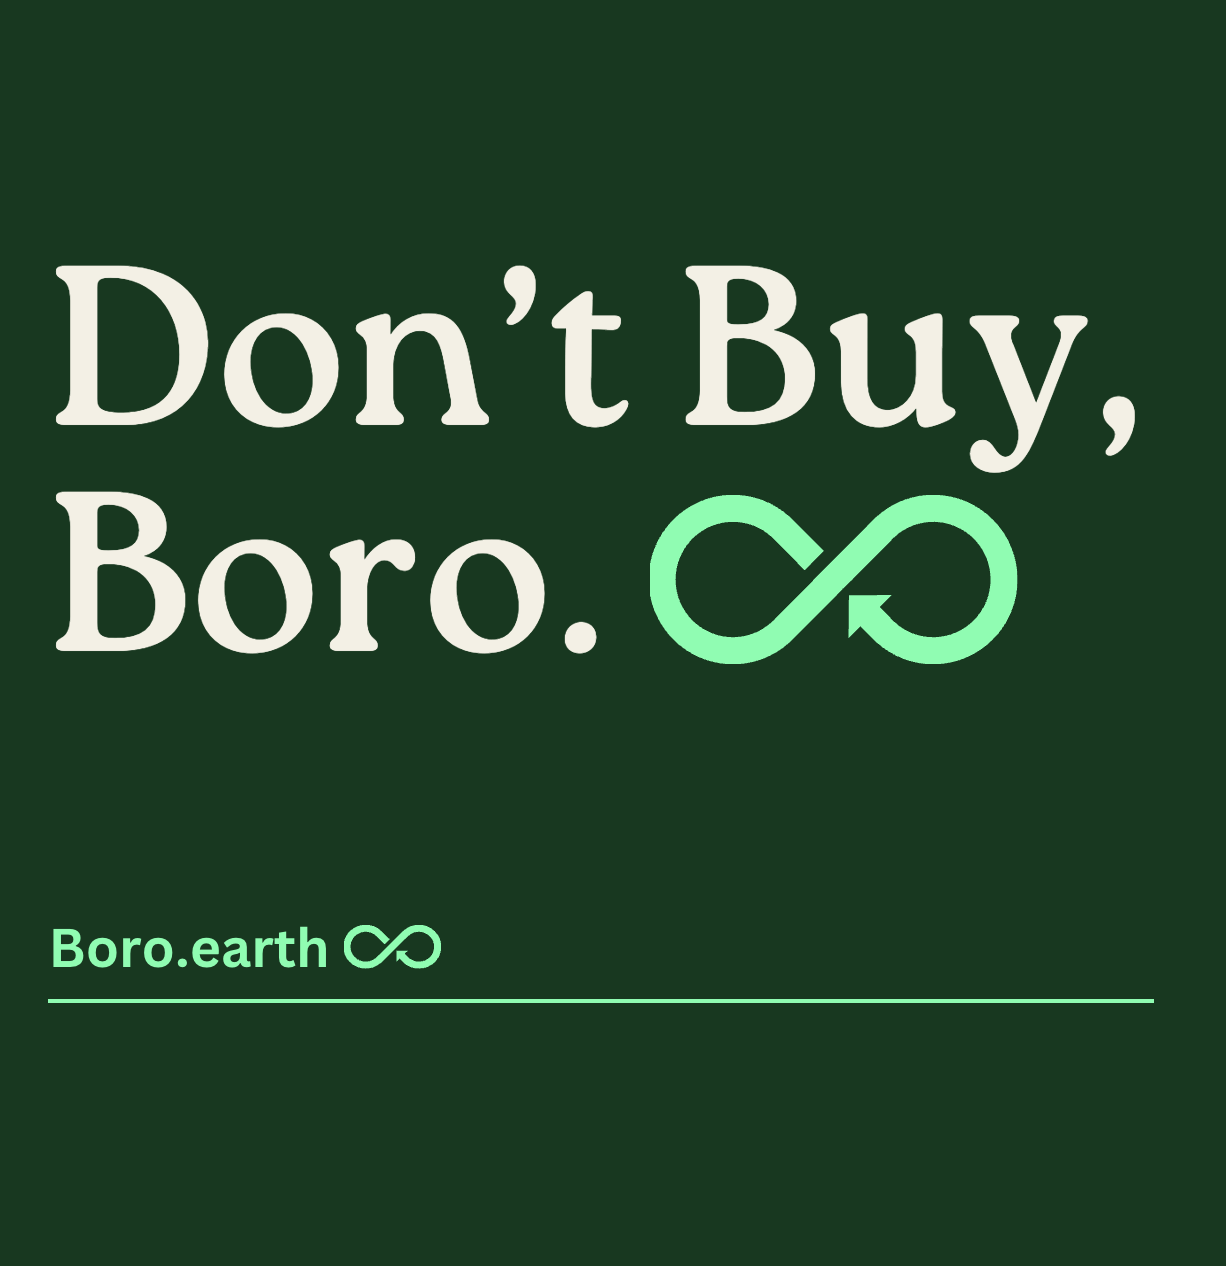 Don't buy, Boro